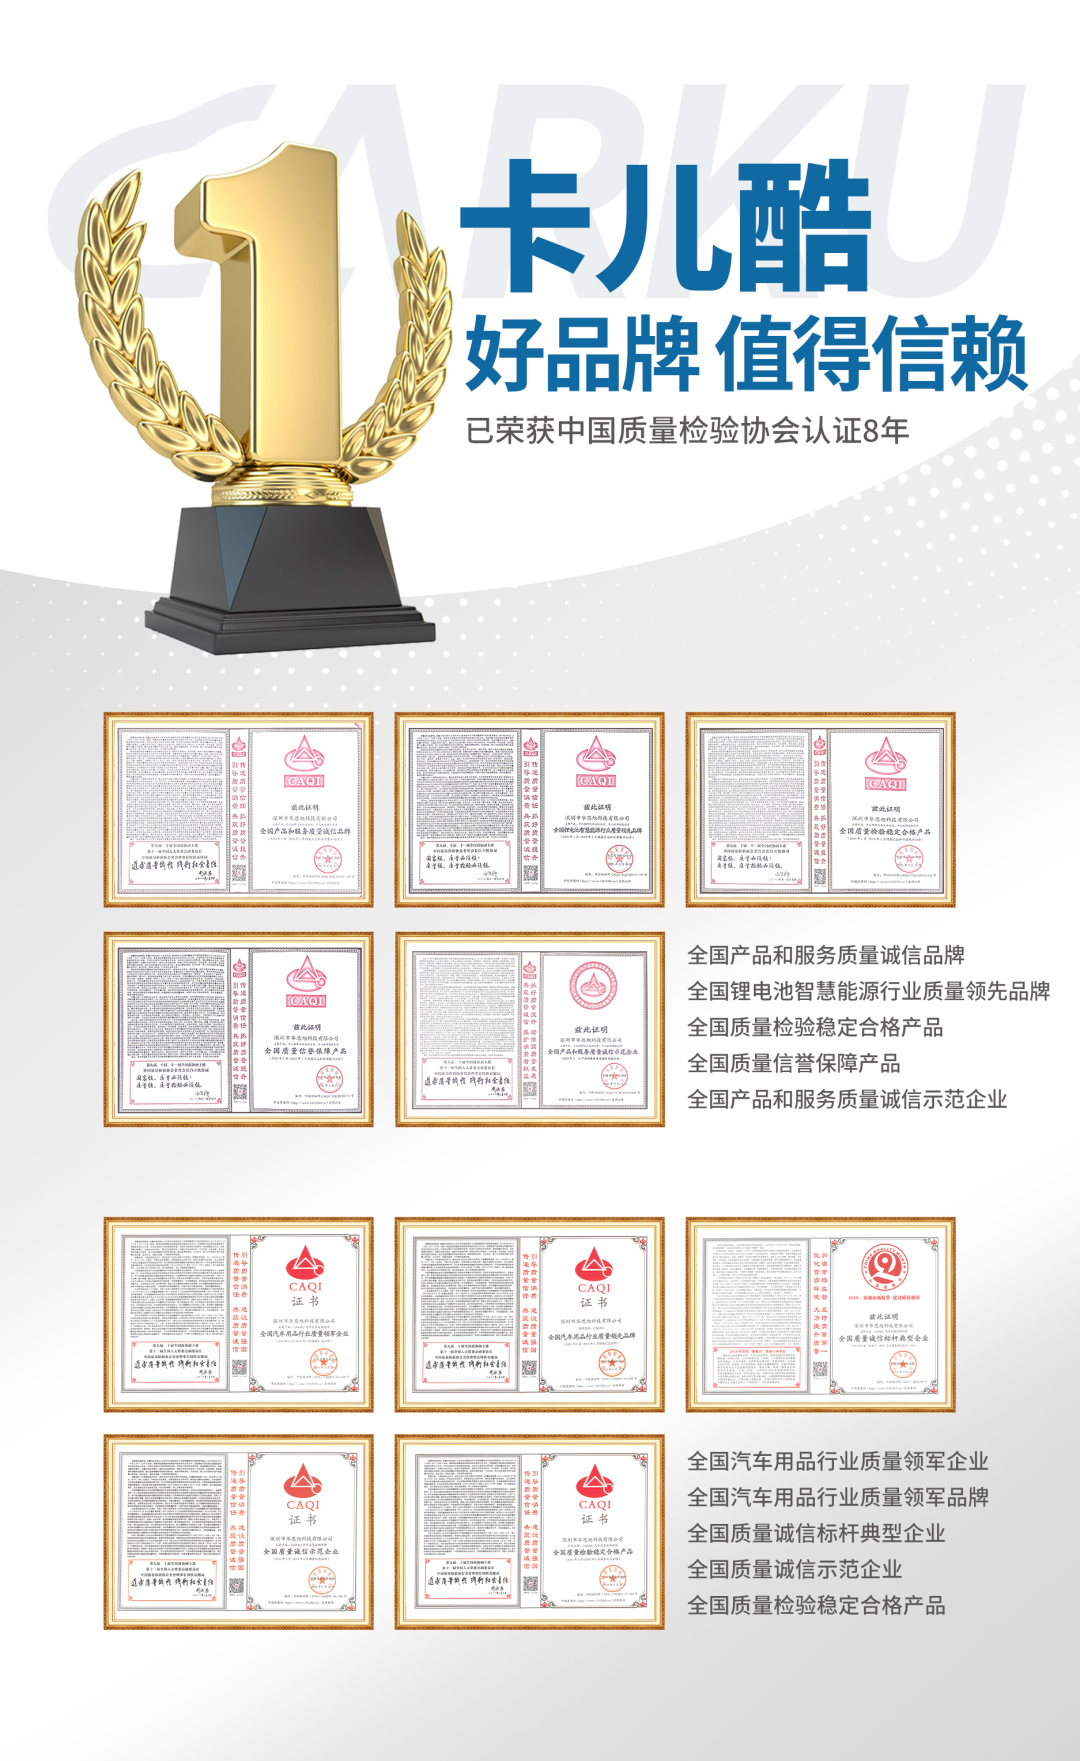 为「中国制造」正名，卡儿酷再度荣获5项质量认证称号！